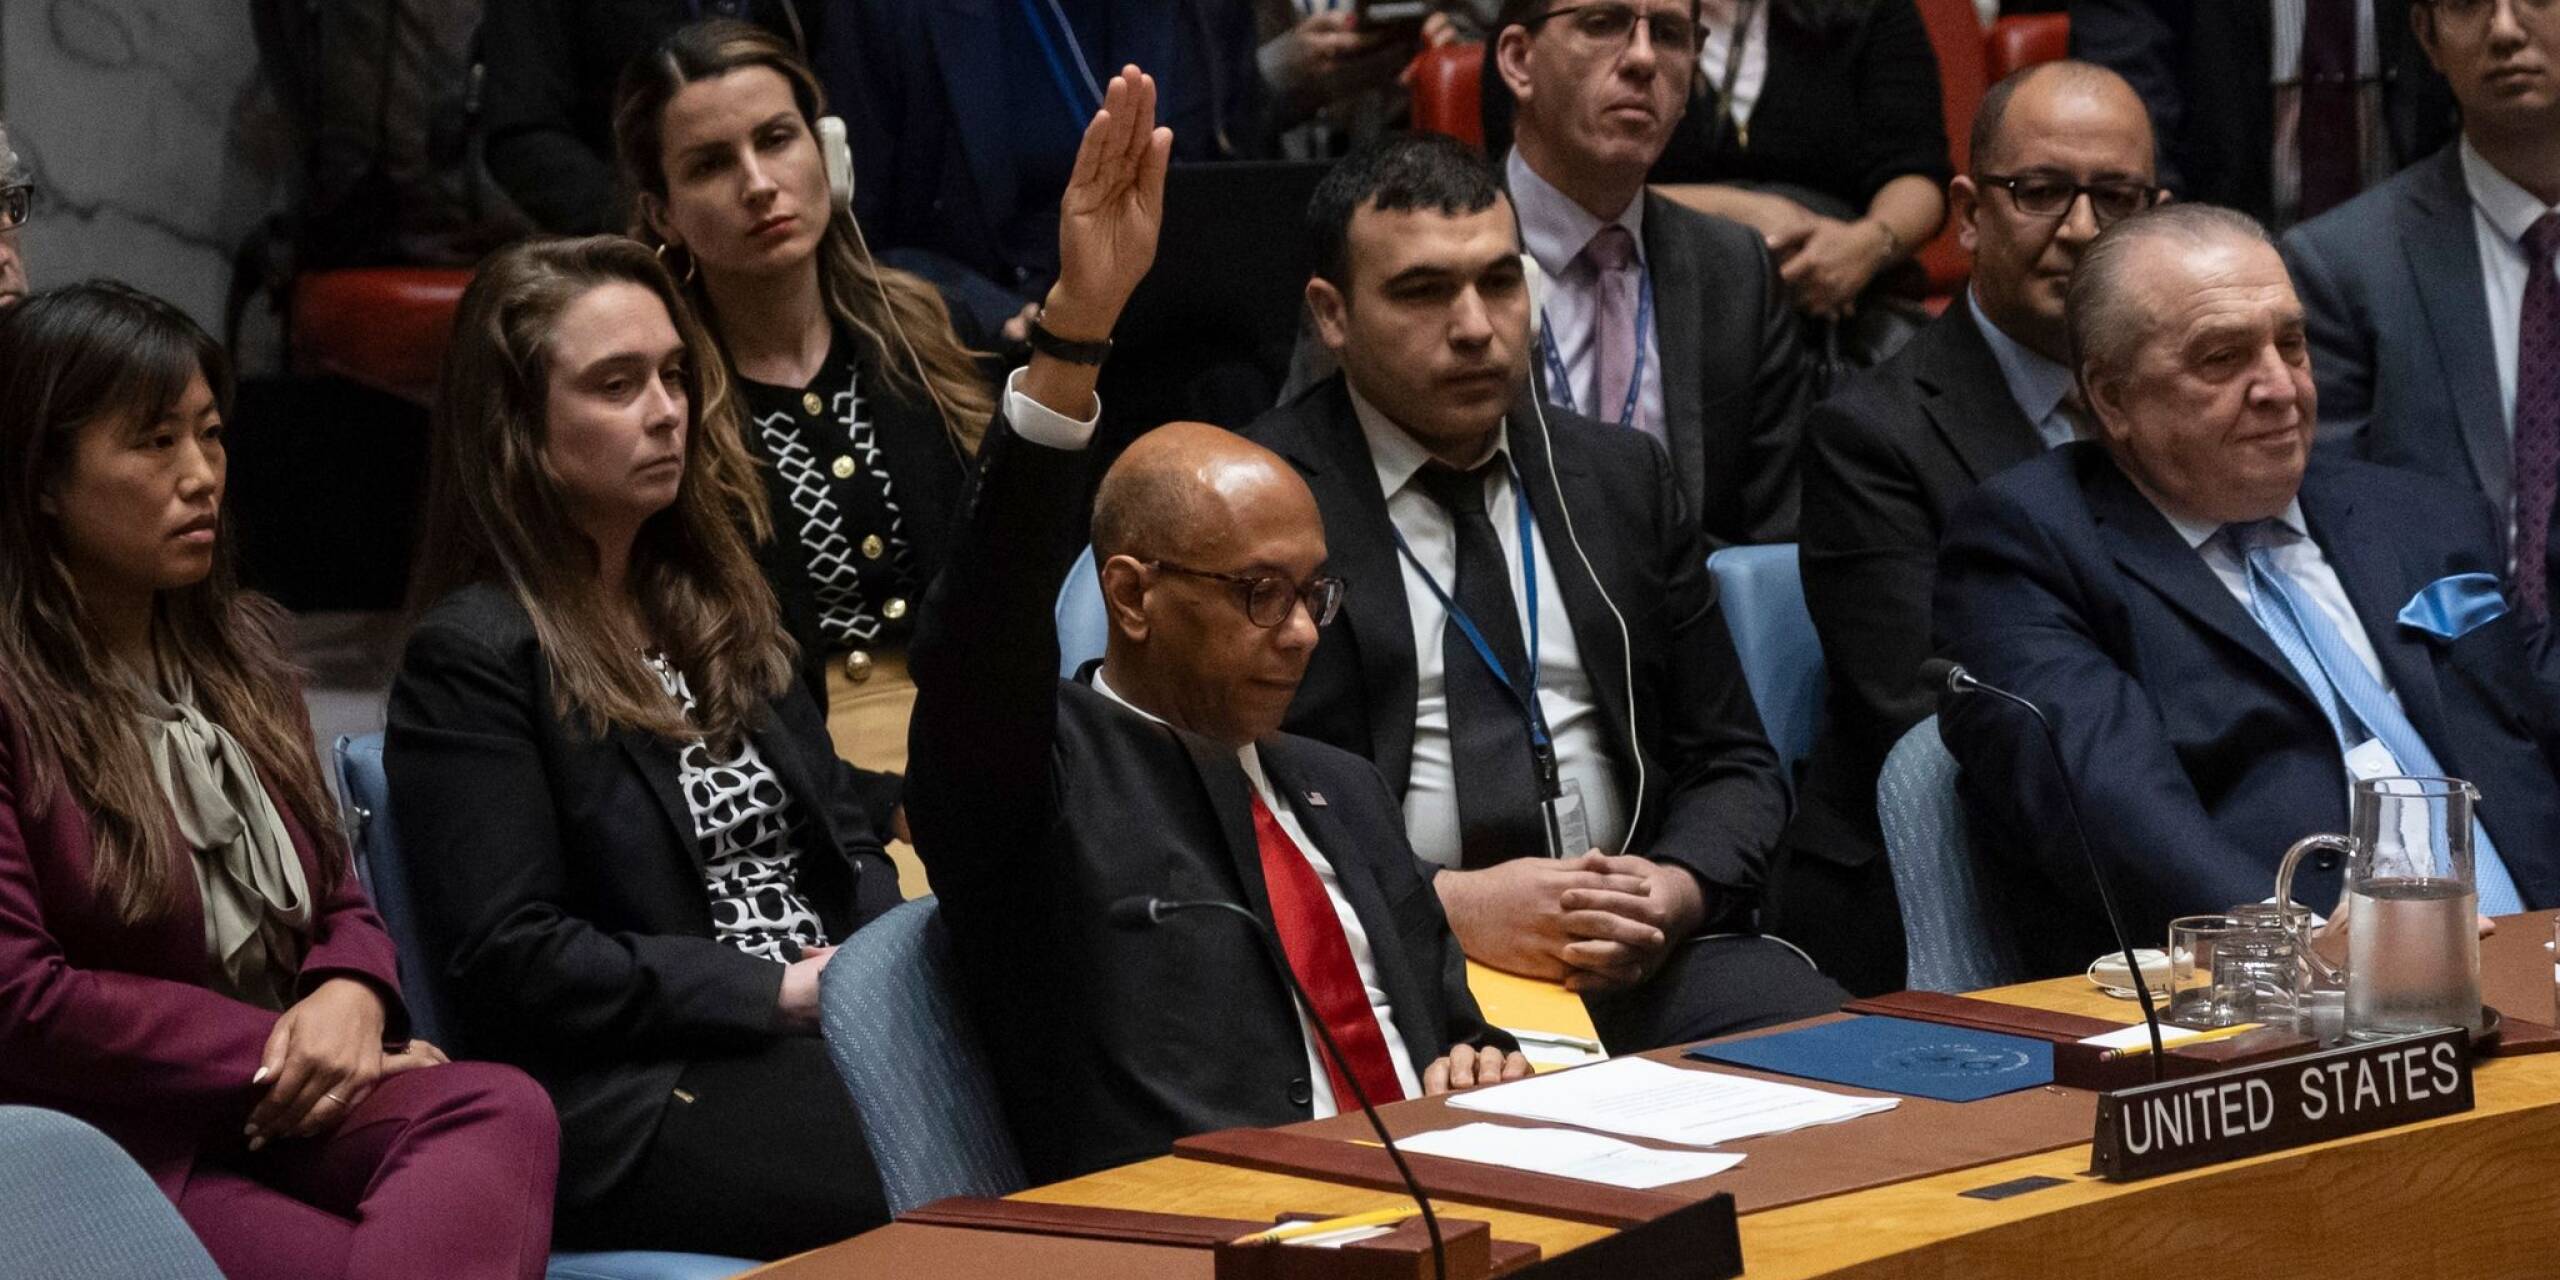 Eine Resolution für die Vollmitgliedschaft eines palästinensischen Staats bei den Vereinten Nationen ist im UN-Sicherheitsrat an einem Veto der USA gescheitert. Zwölf Mitgliedsländer stimmten in New York für die Resolution, zwei enthielten sich.